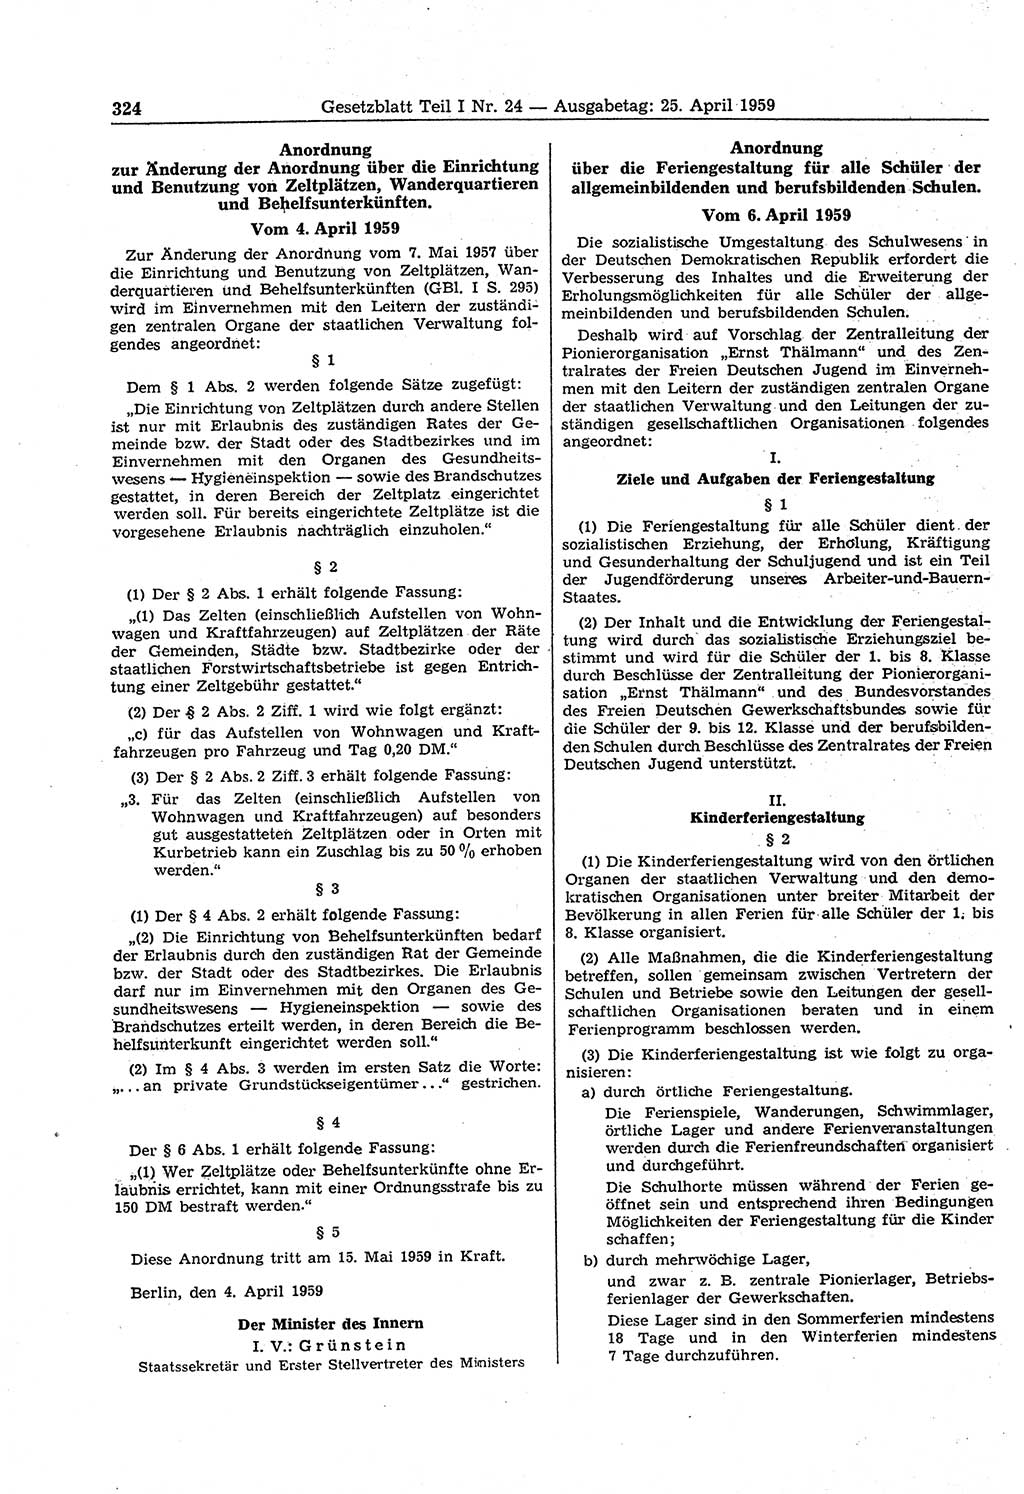 Gesetzblatt (GBl.) der Deutschen Demokratischen Republik (DDR) Teil Ⅰ 1959, Seite 324 (GBl. DDR Ⅰ 1959, S. 324)